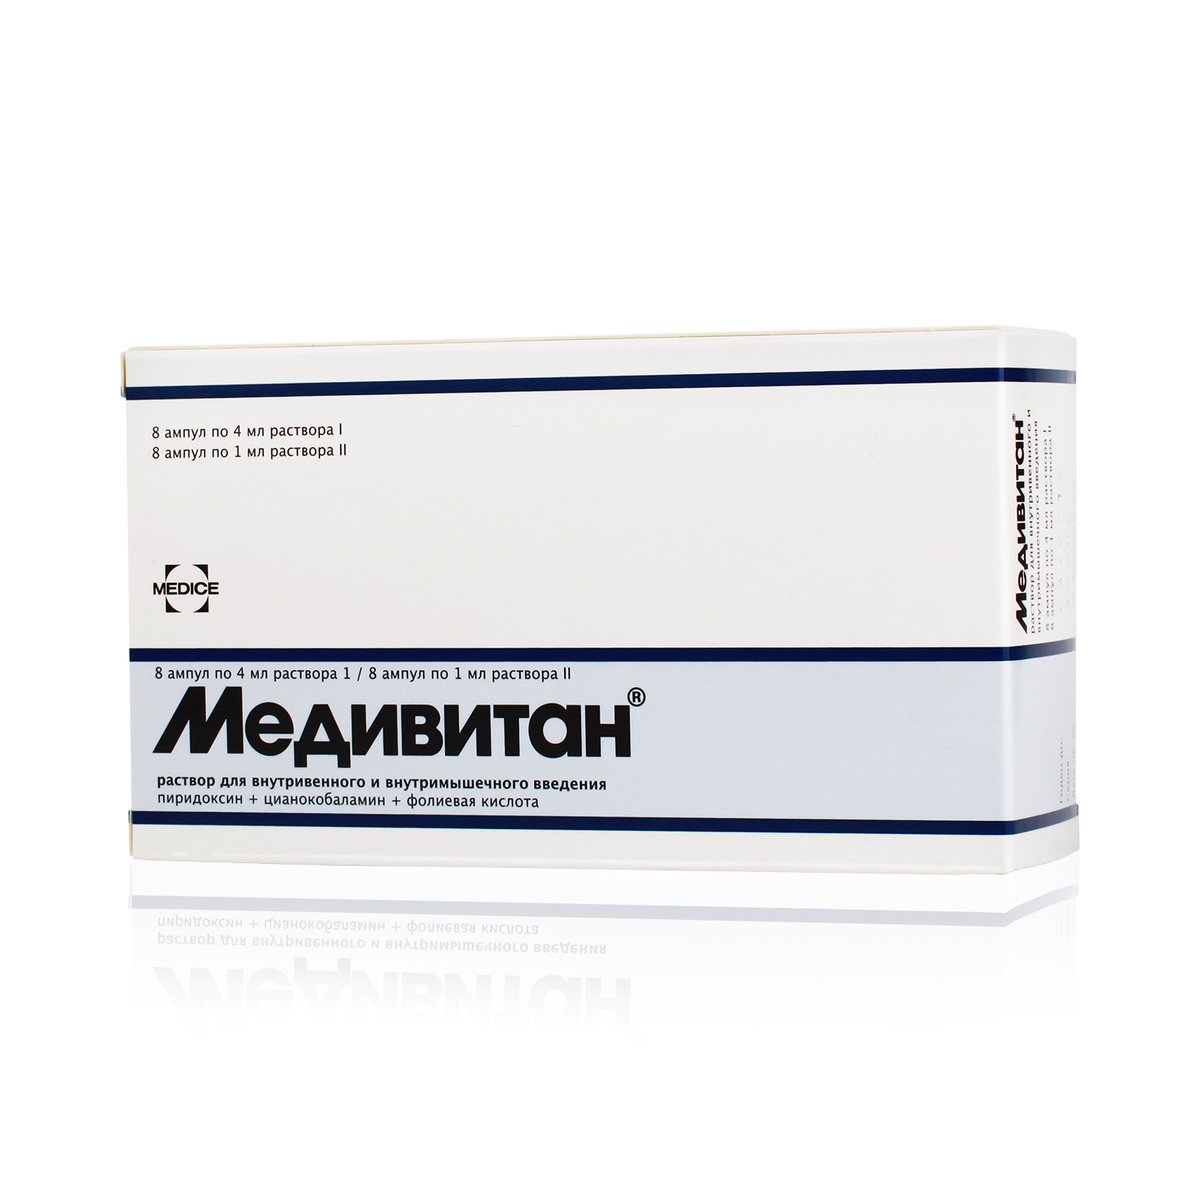 Медивитан (раствор, 8 шт, 1 мл, 4 + 1 мл) - цена,  онлайн в .